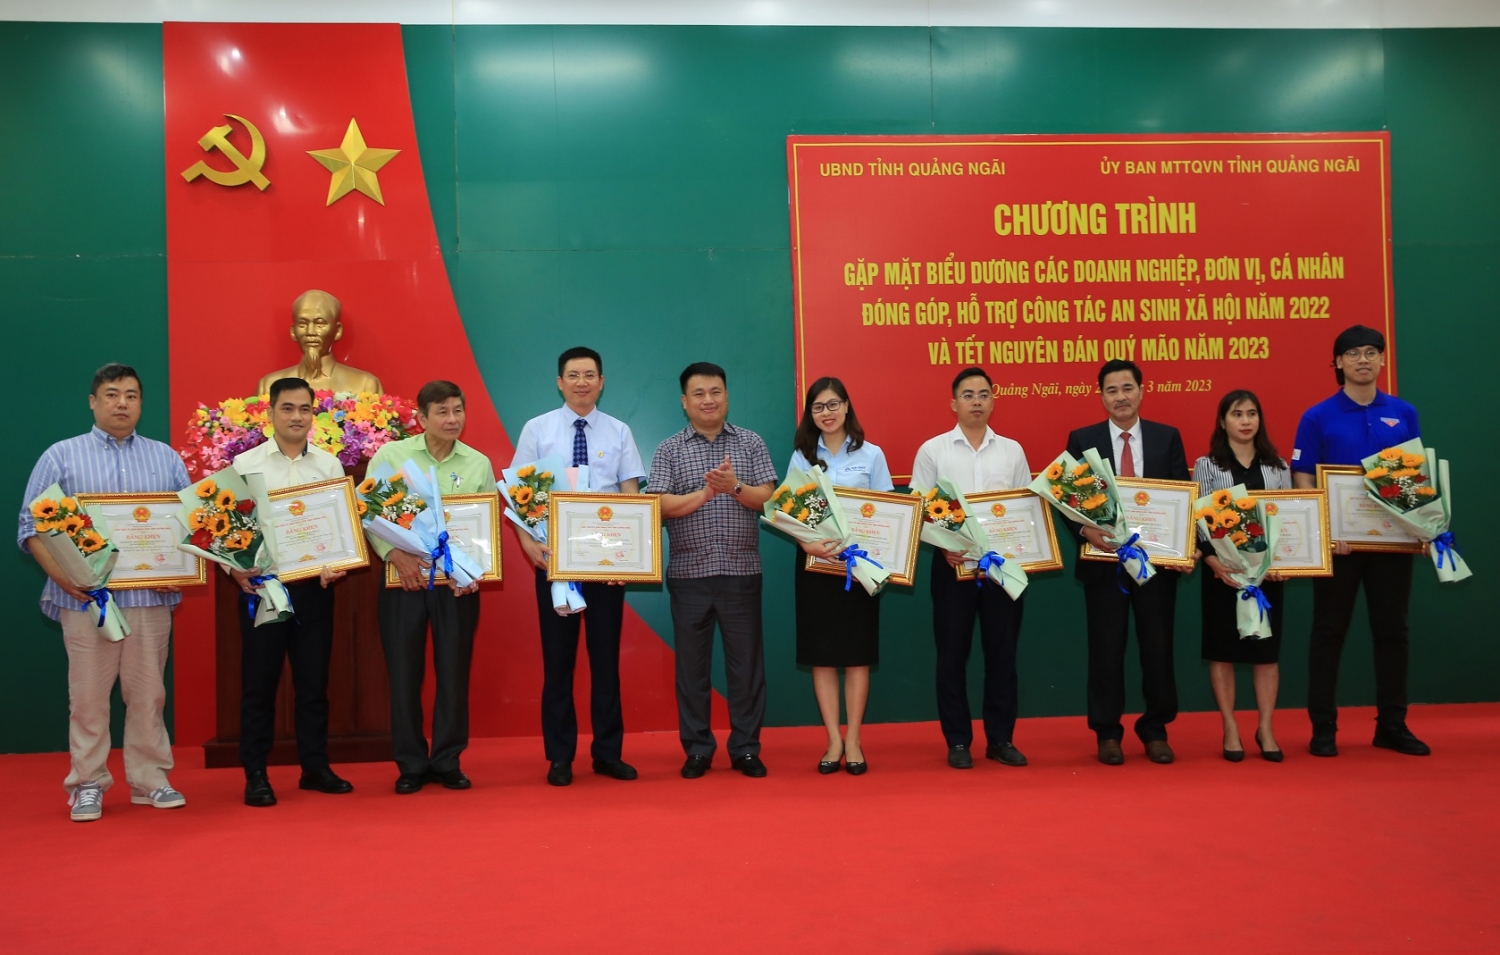 BSR nhận Bằng khen của UBND tỉnh Quảng Ngãi vì có nhiều đóng góp trong công tác ASXH